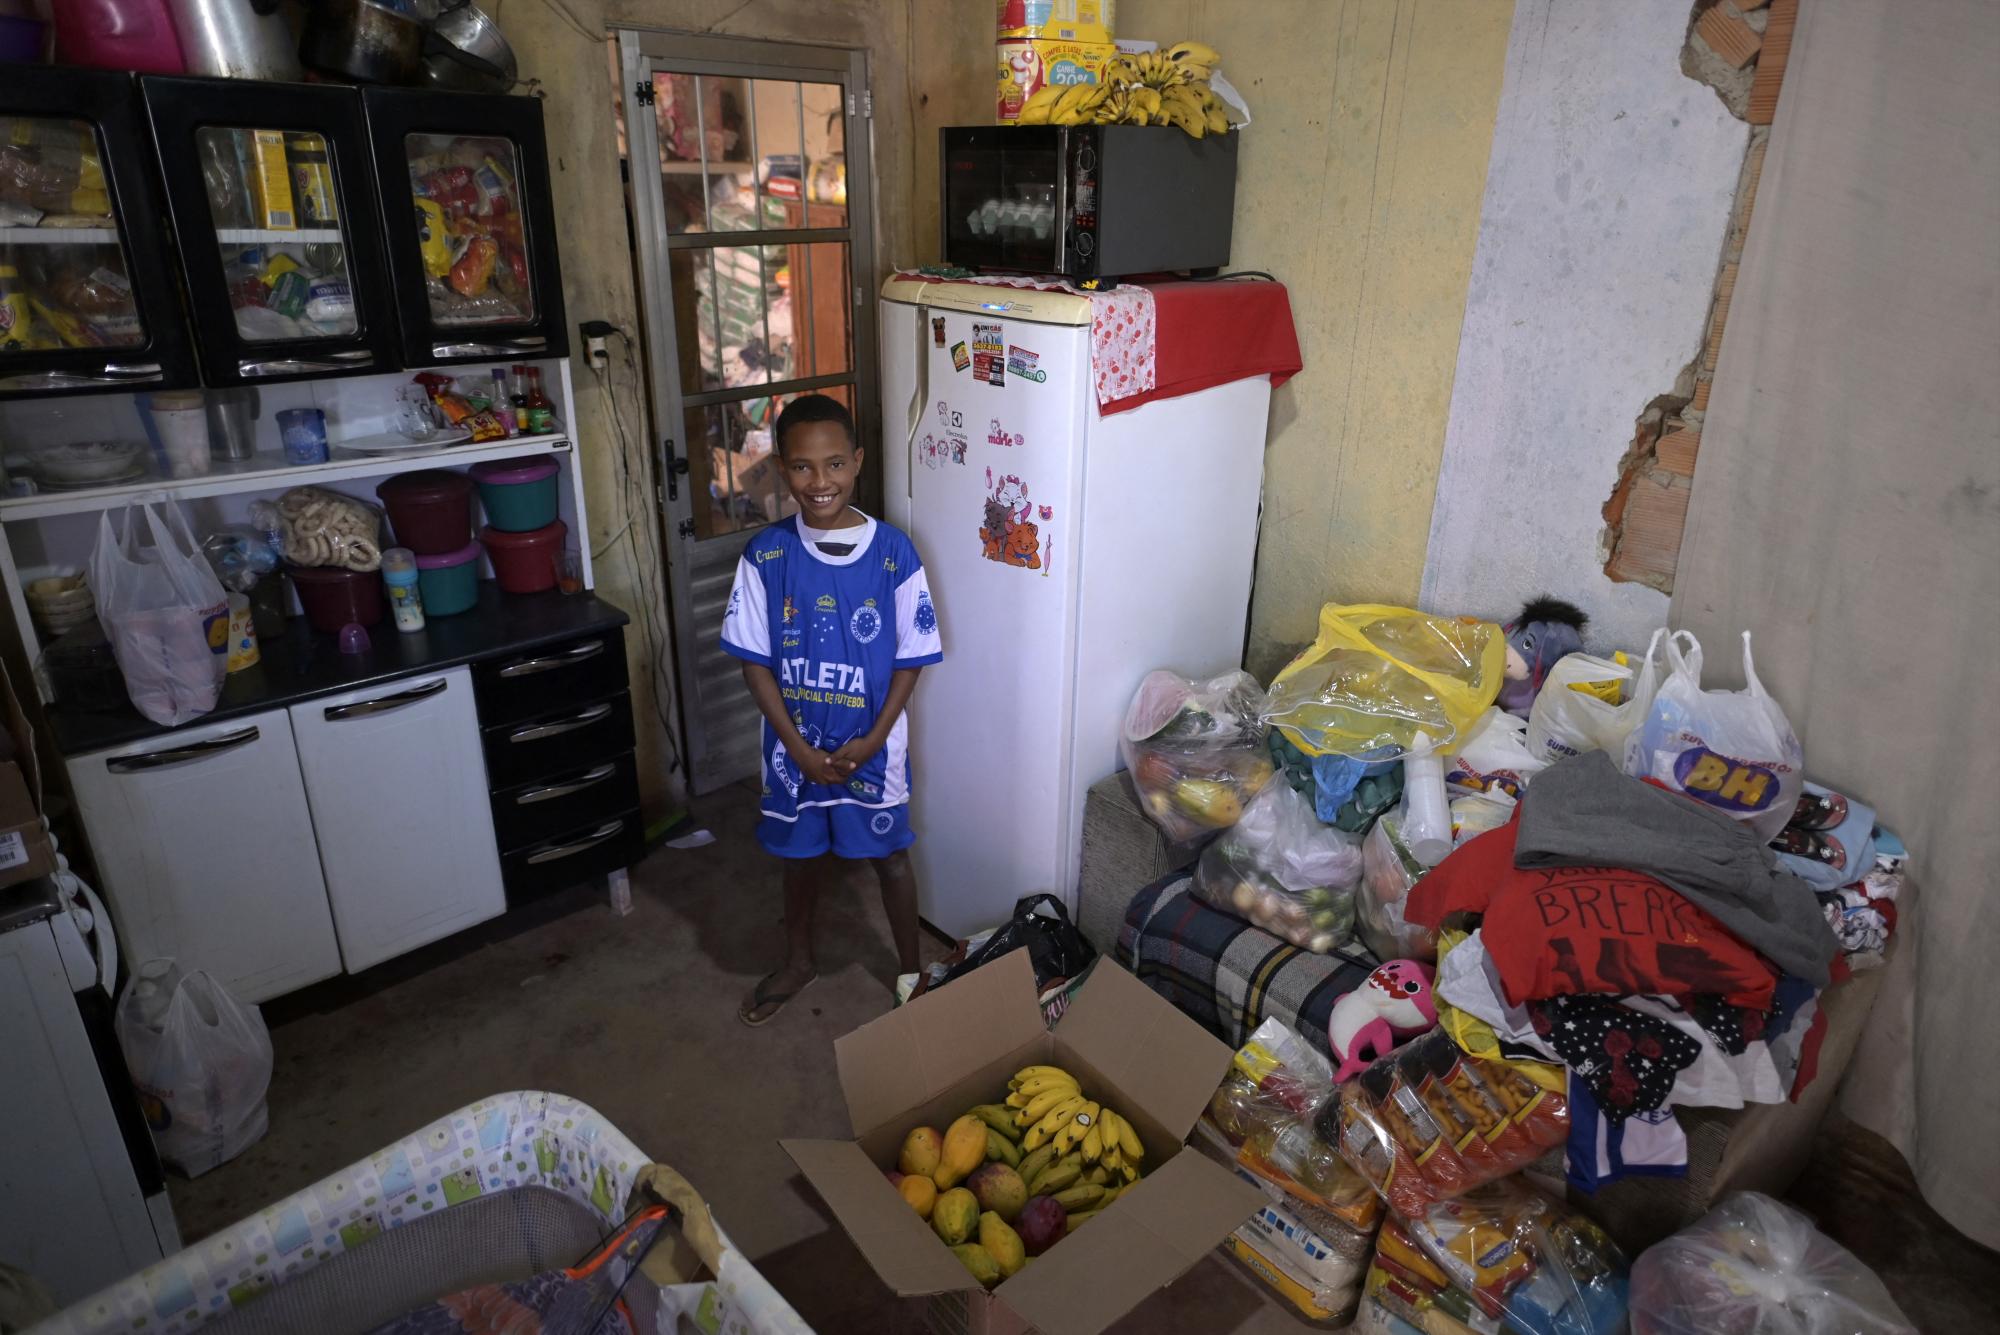 La historia de la familia Barrios se viralizó y recibieron decenas de donaciones de alimentos tras conocerse que no tenían nada para comer.